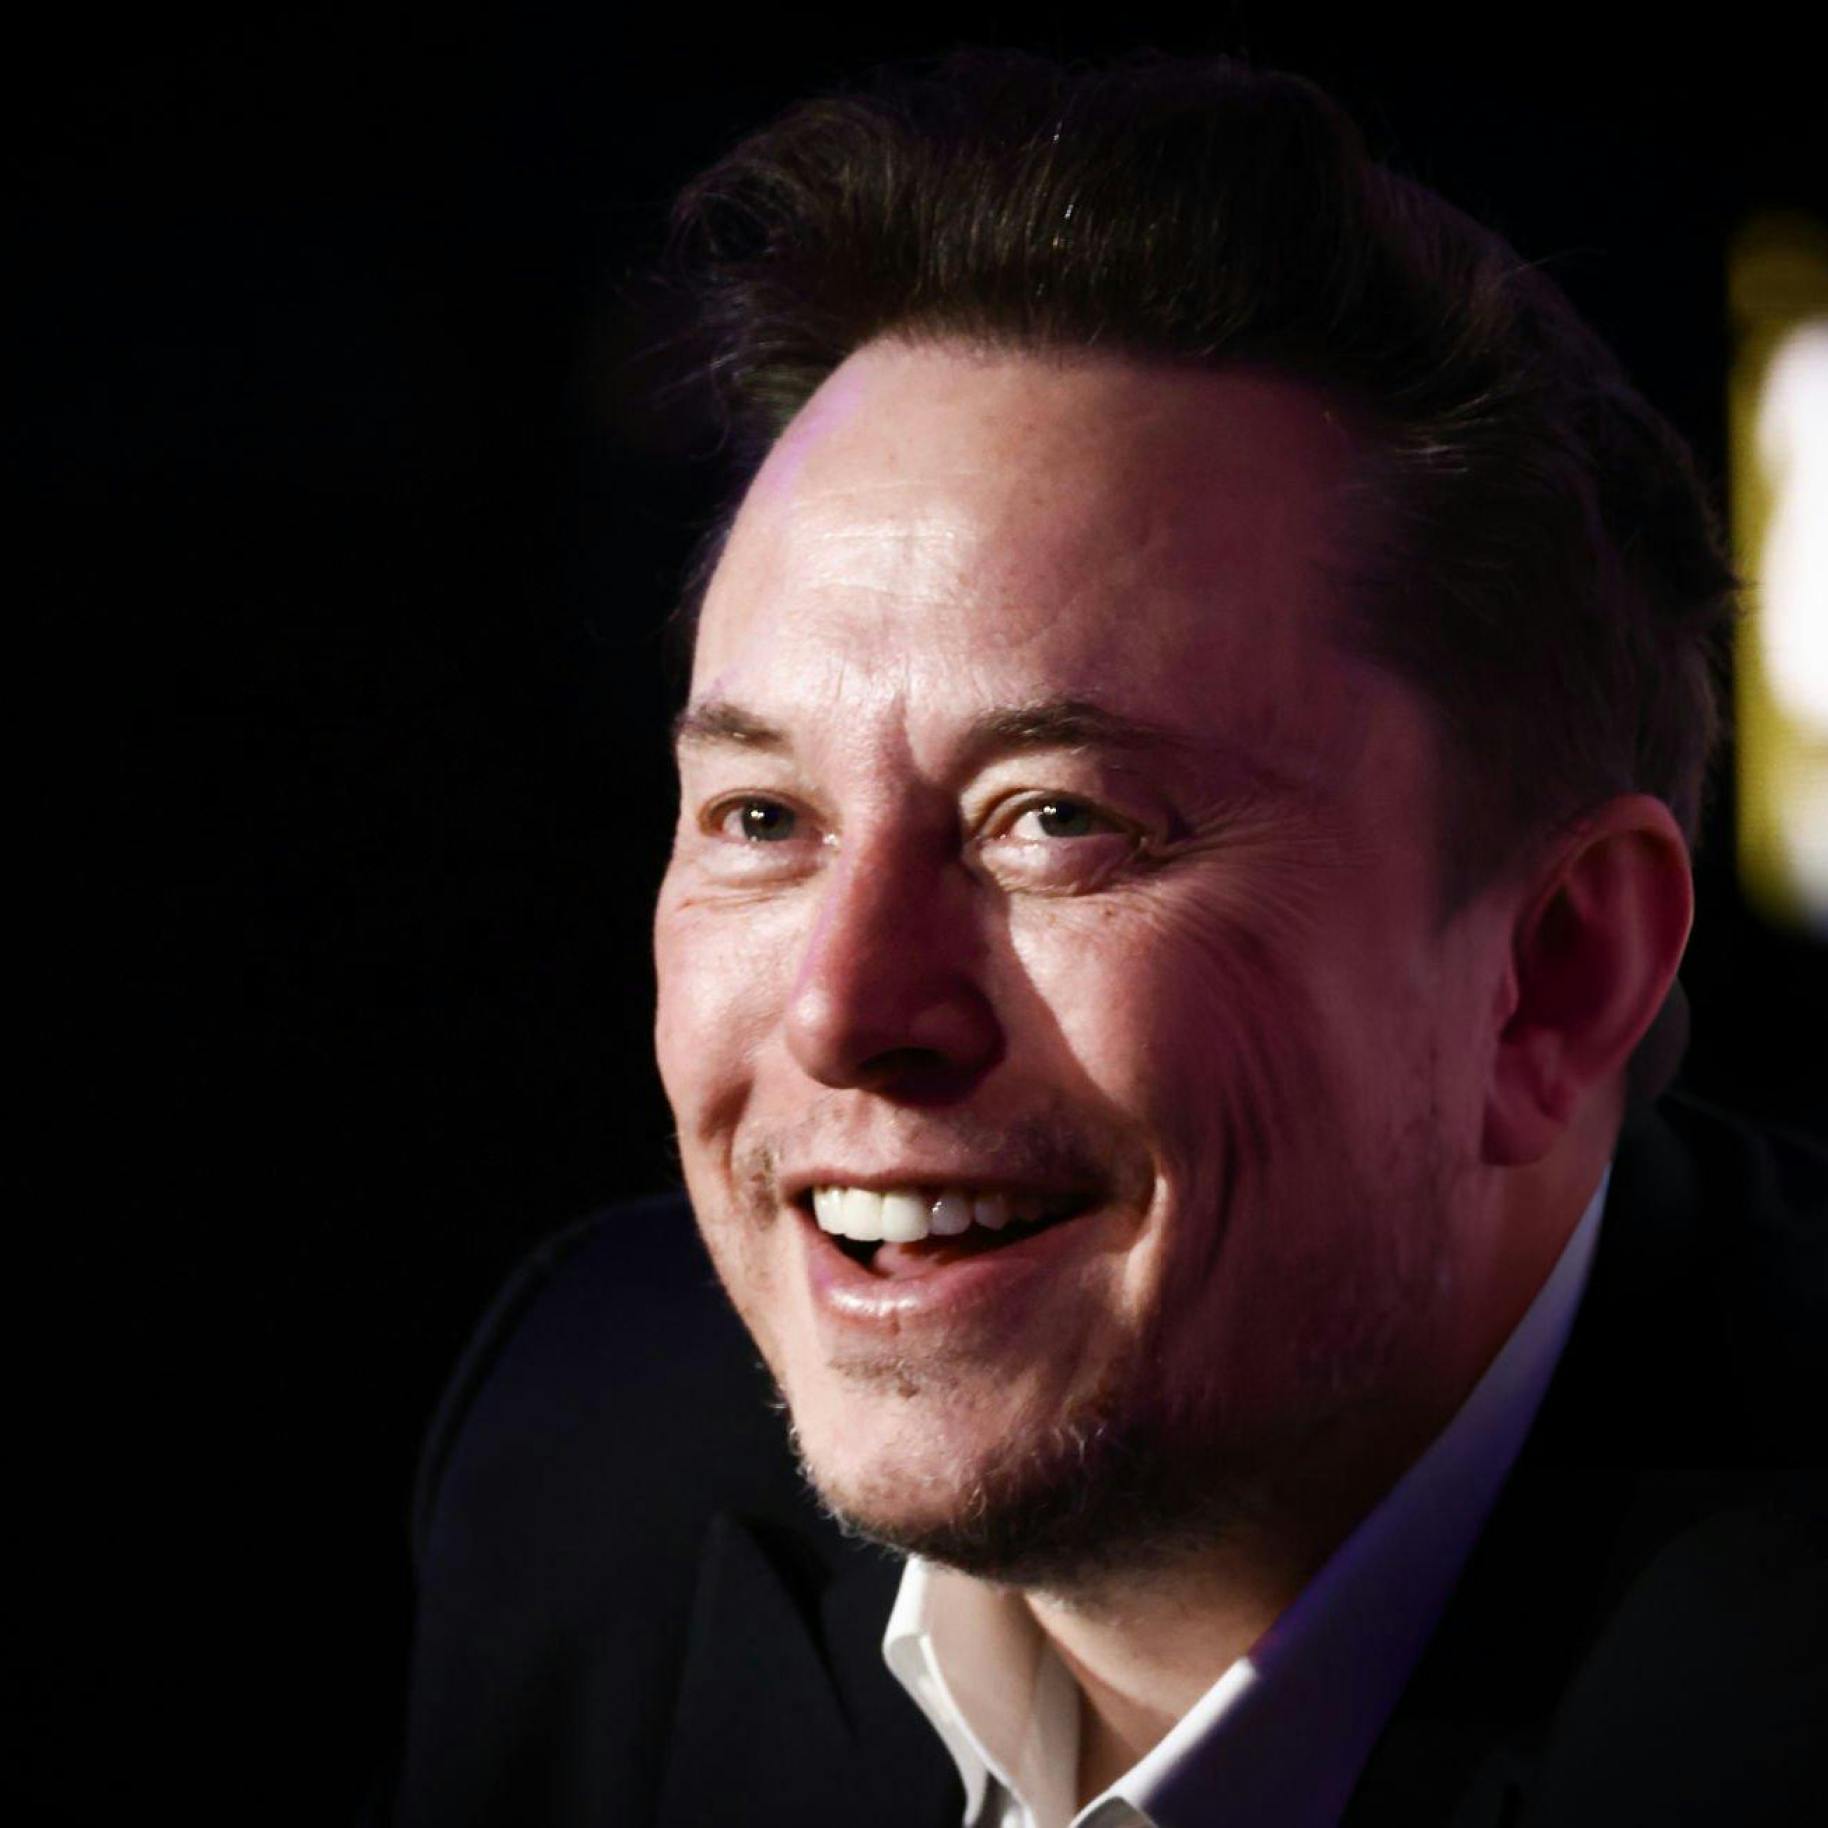 Fotografia di Elon Musk leggermente di profilo mentre sorride.